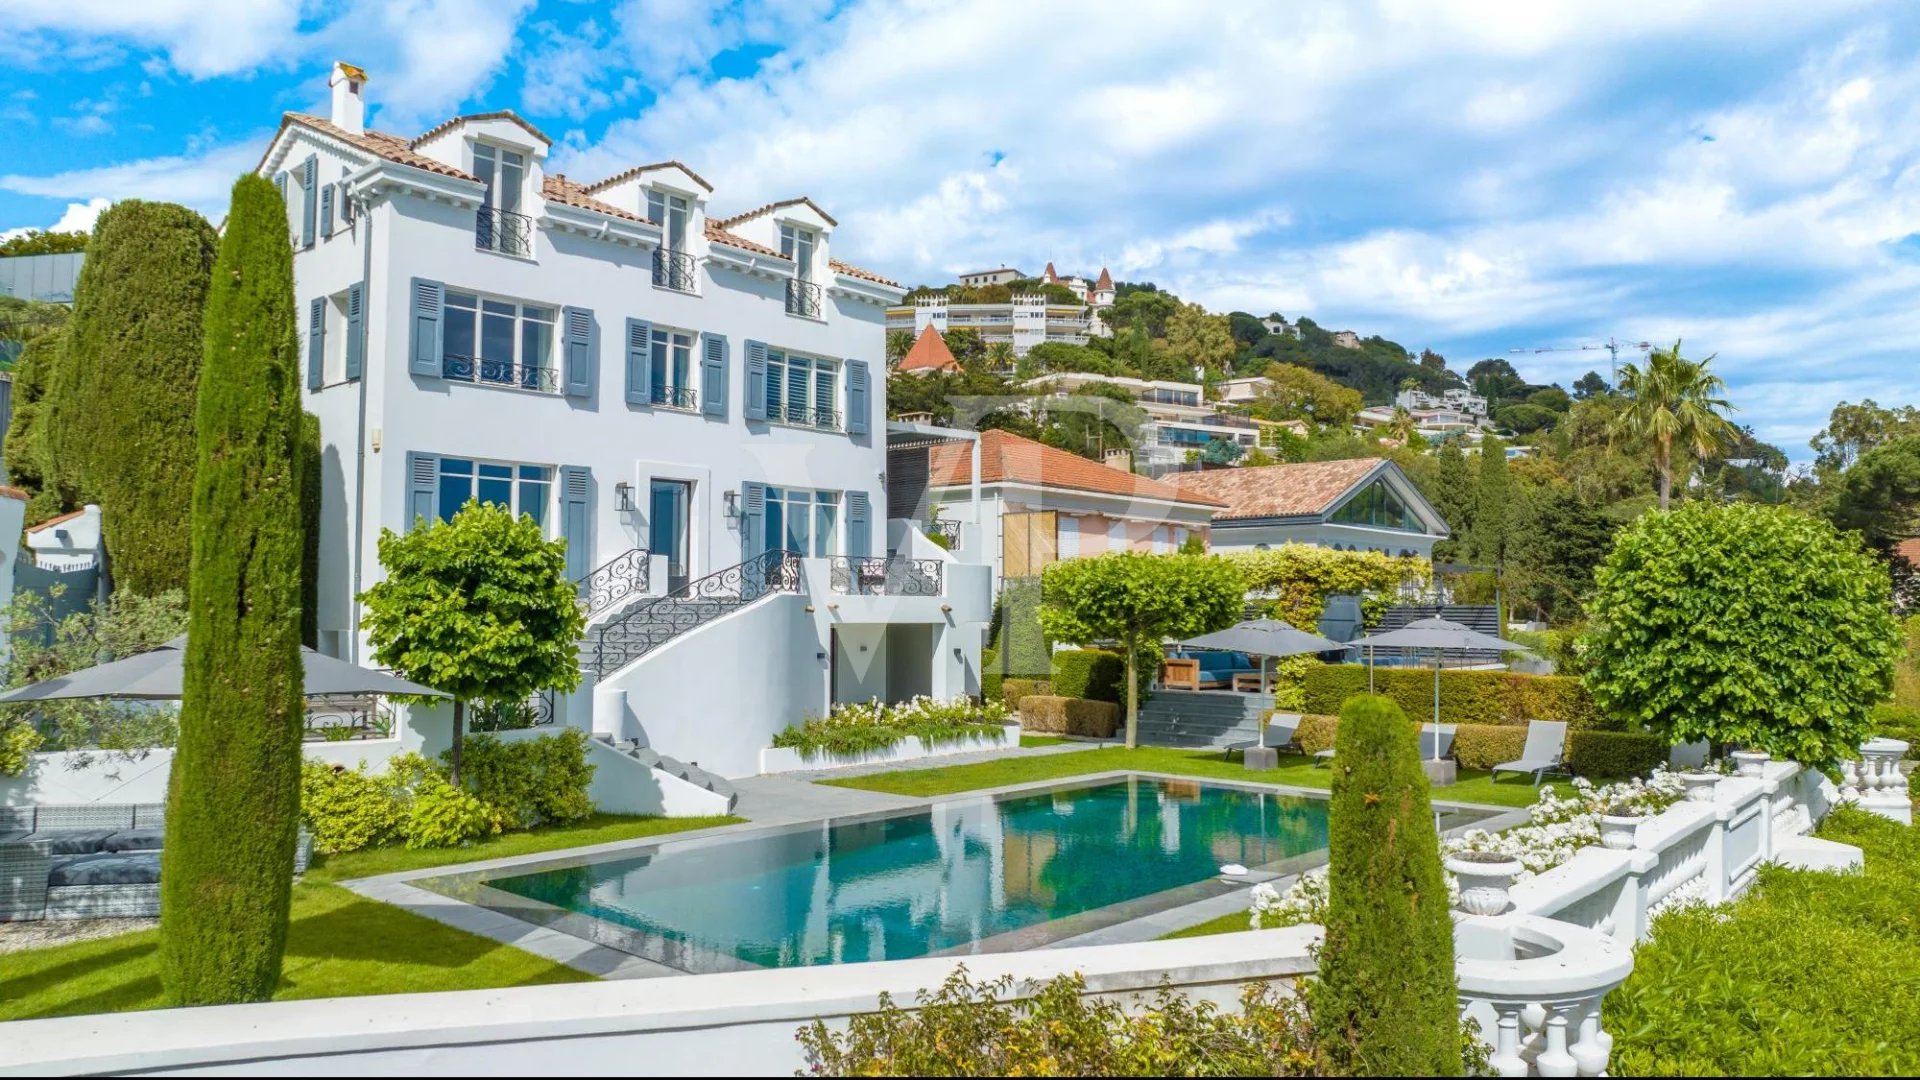 Cannes, Californie – Hervorragendes Anwesen aus den 1920, komplett renoviert mit Seeblick